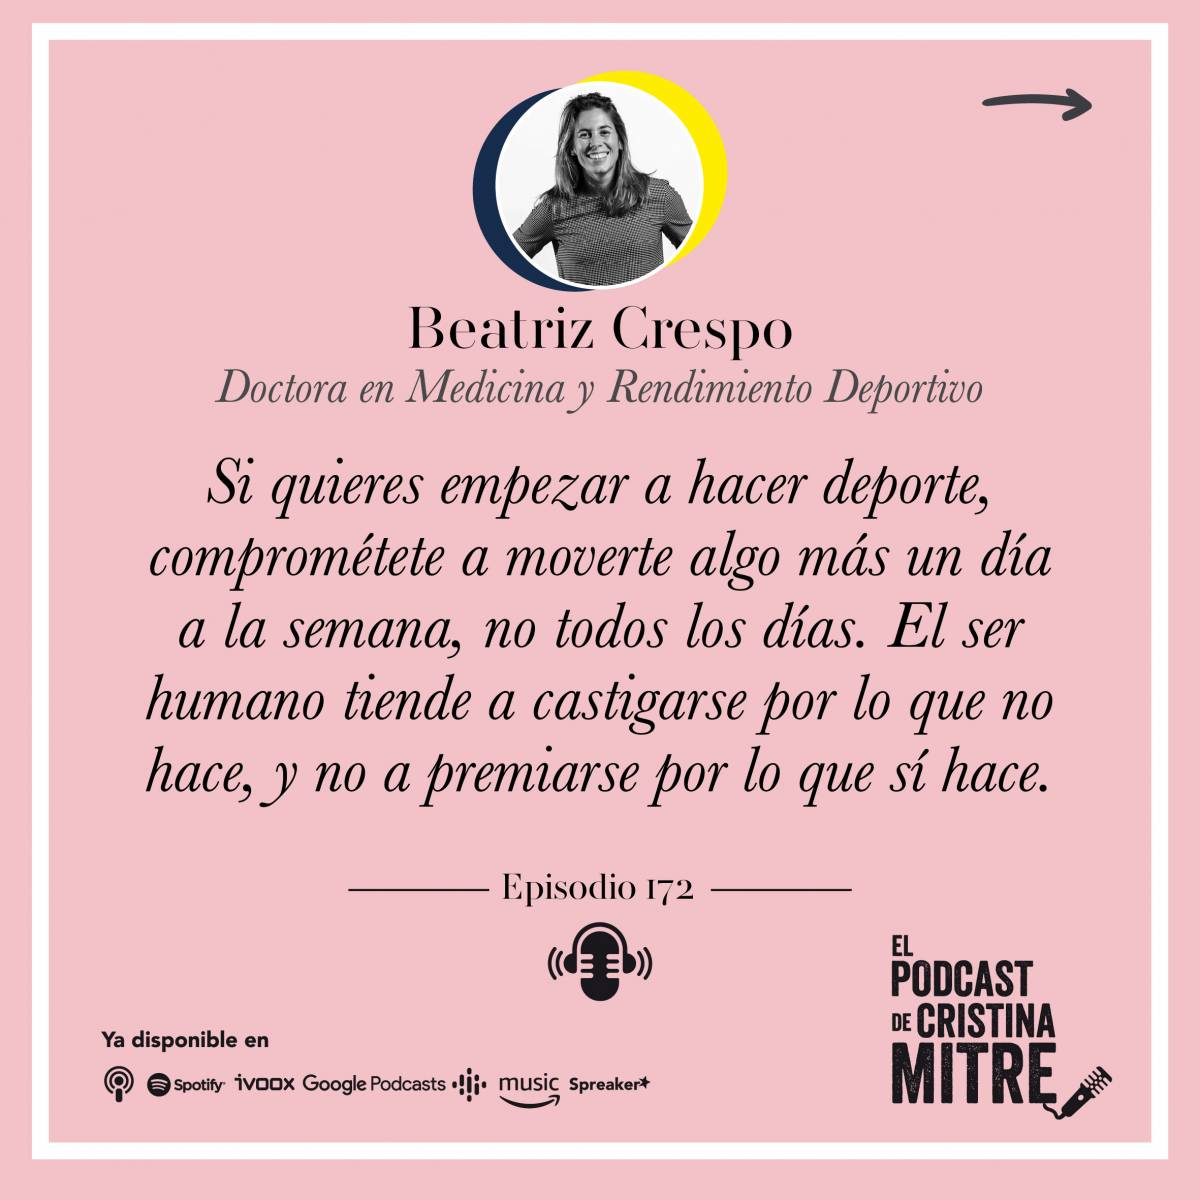 Podcast de Cristina Mitre Beatriz Crespo Hábitos saludables